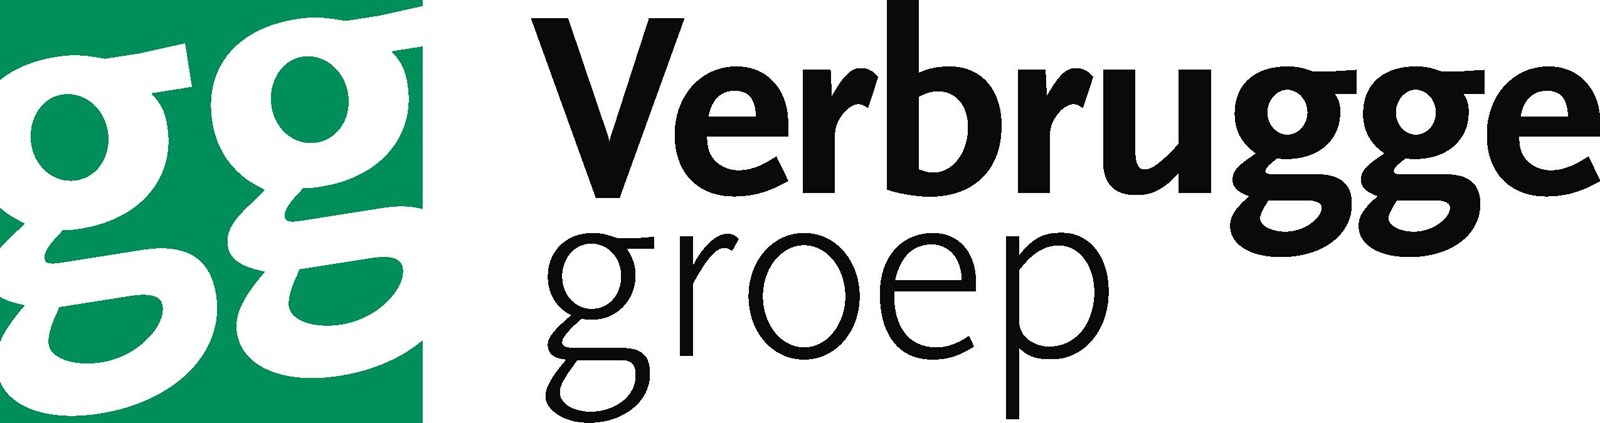 Afbeelding van Verbrugge Groep - Oosterhout